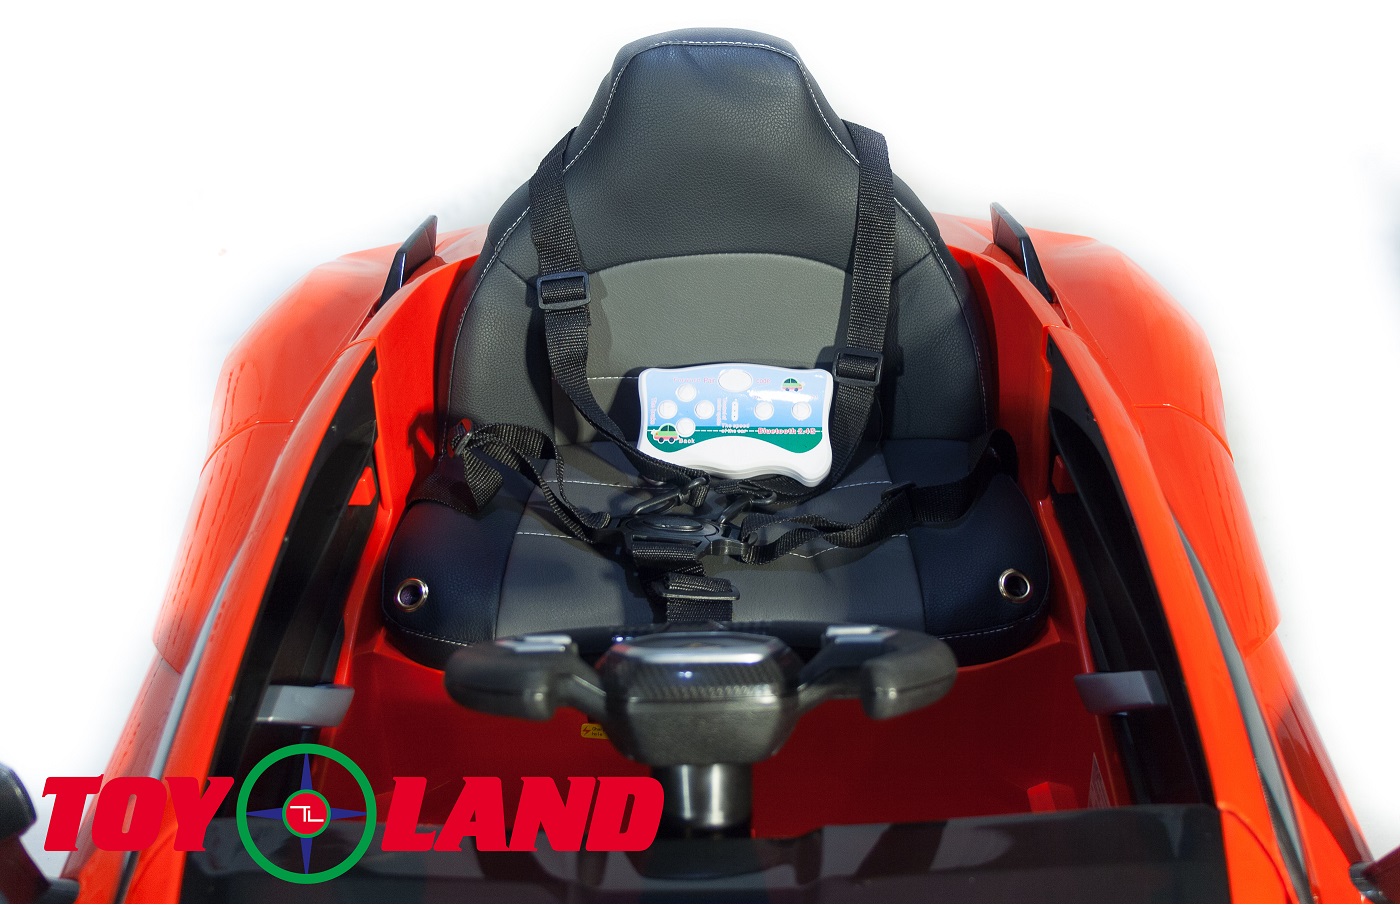 Электромобиль ToyLand Lamborghini YHK2881 красного цвета 